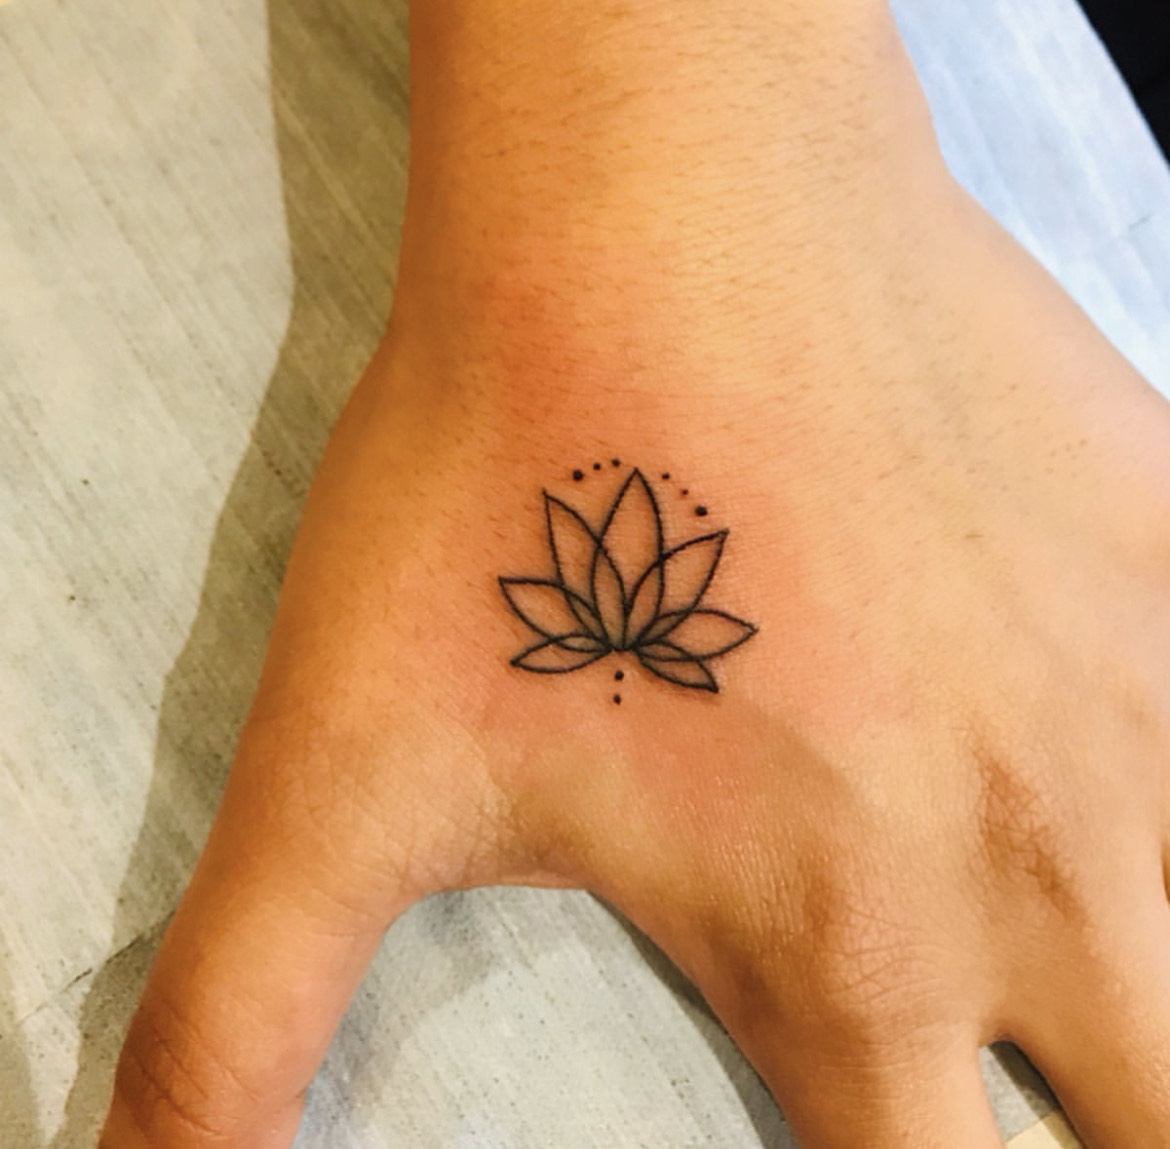 Small minimal tattoo